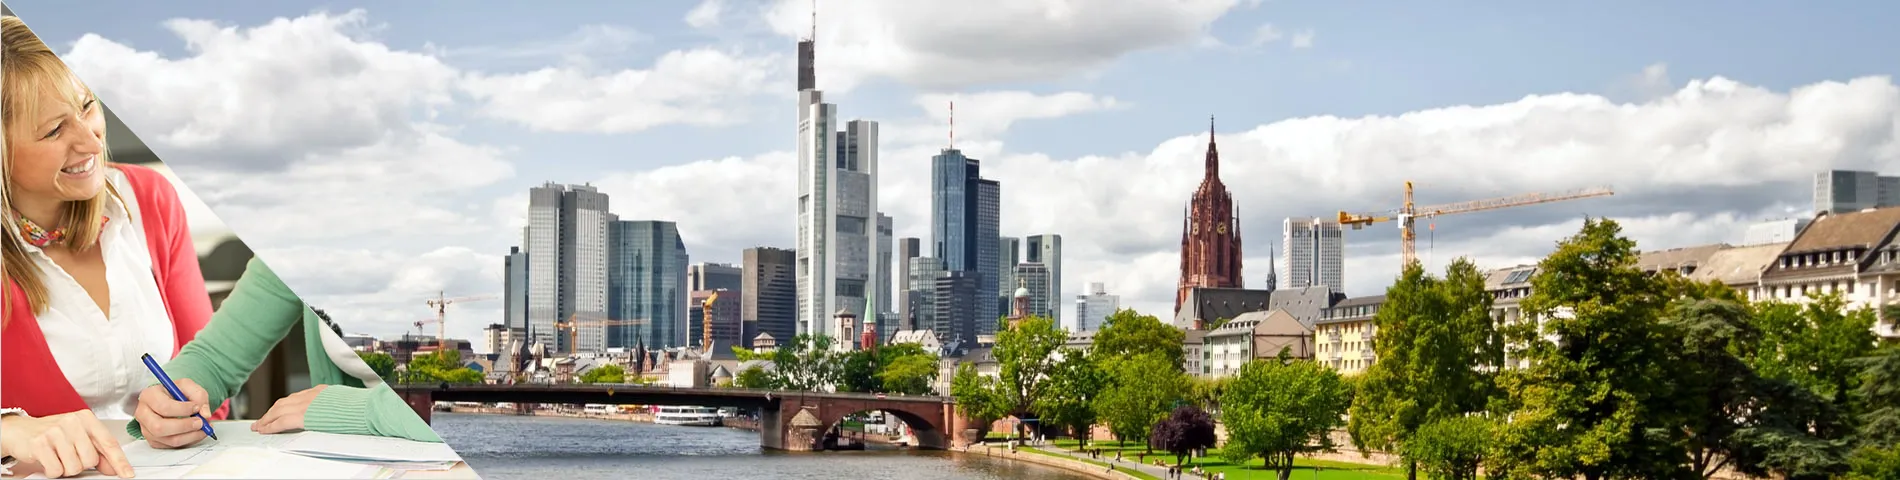 Frankfurt - Tanulj és lakj a tanárod otthonában